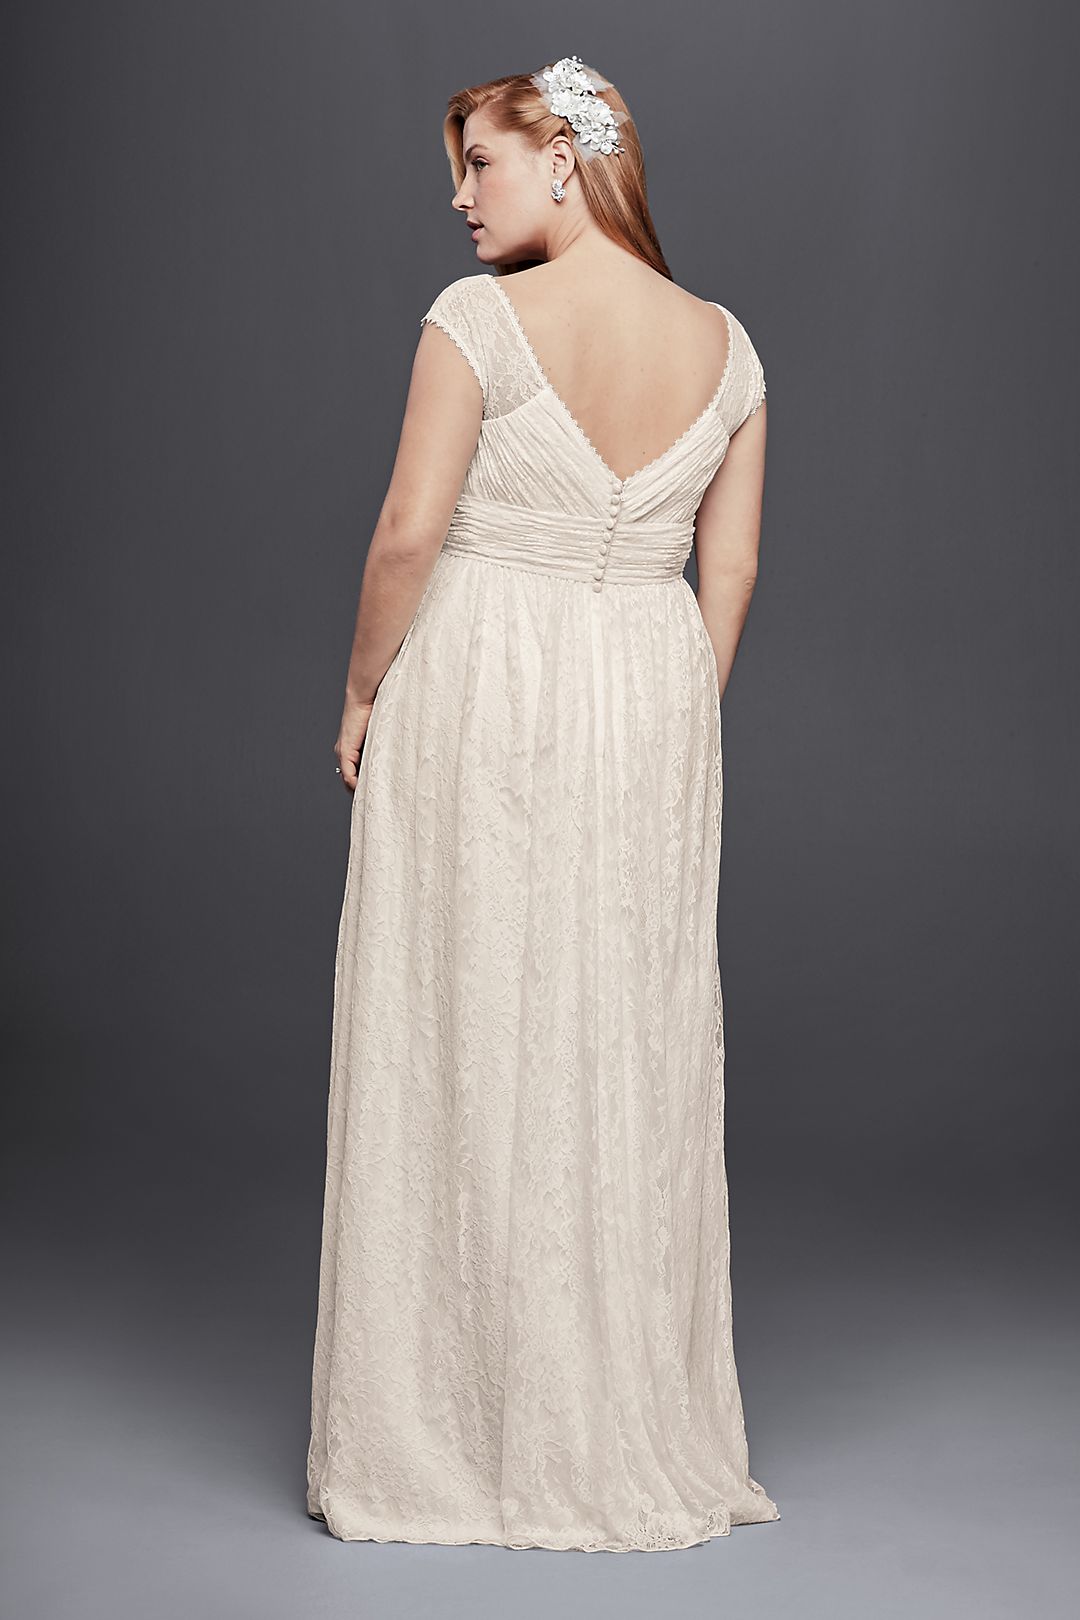 Lace Sheath Wedding Dress with Illusion Cap Sleeve Image 2